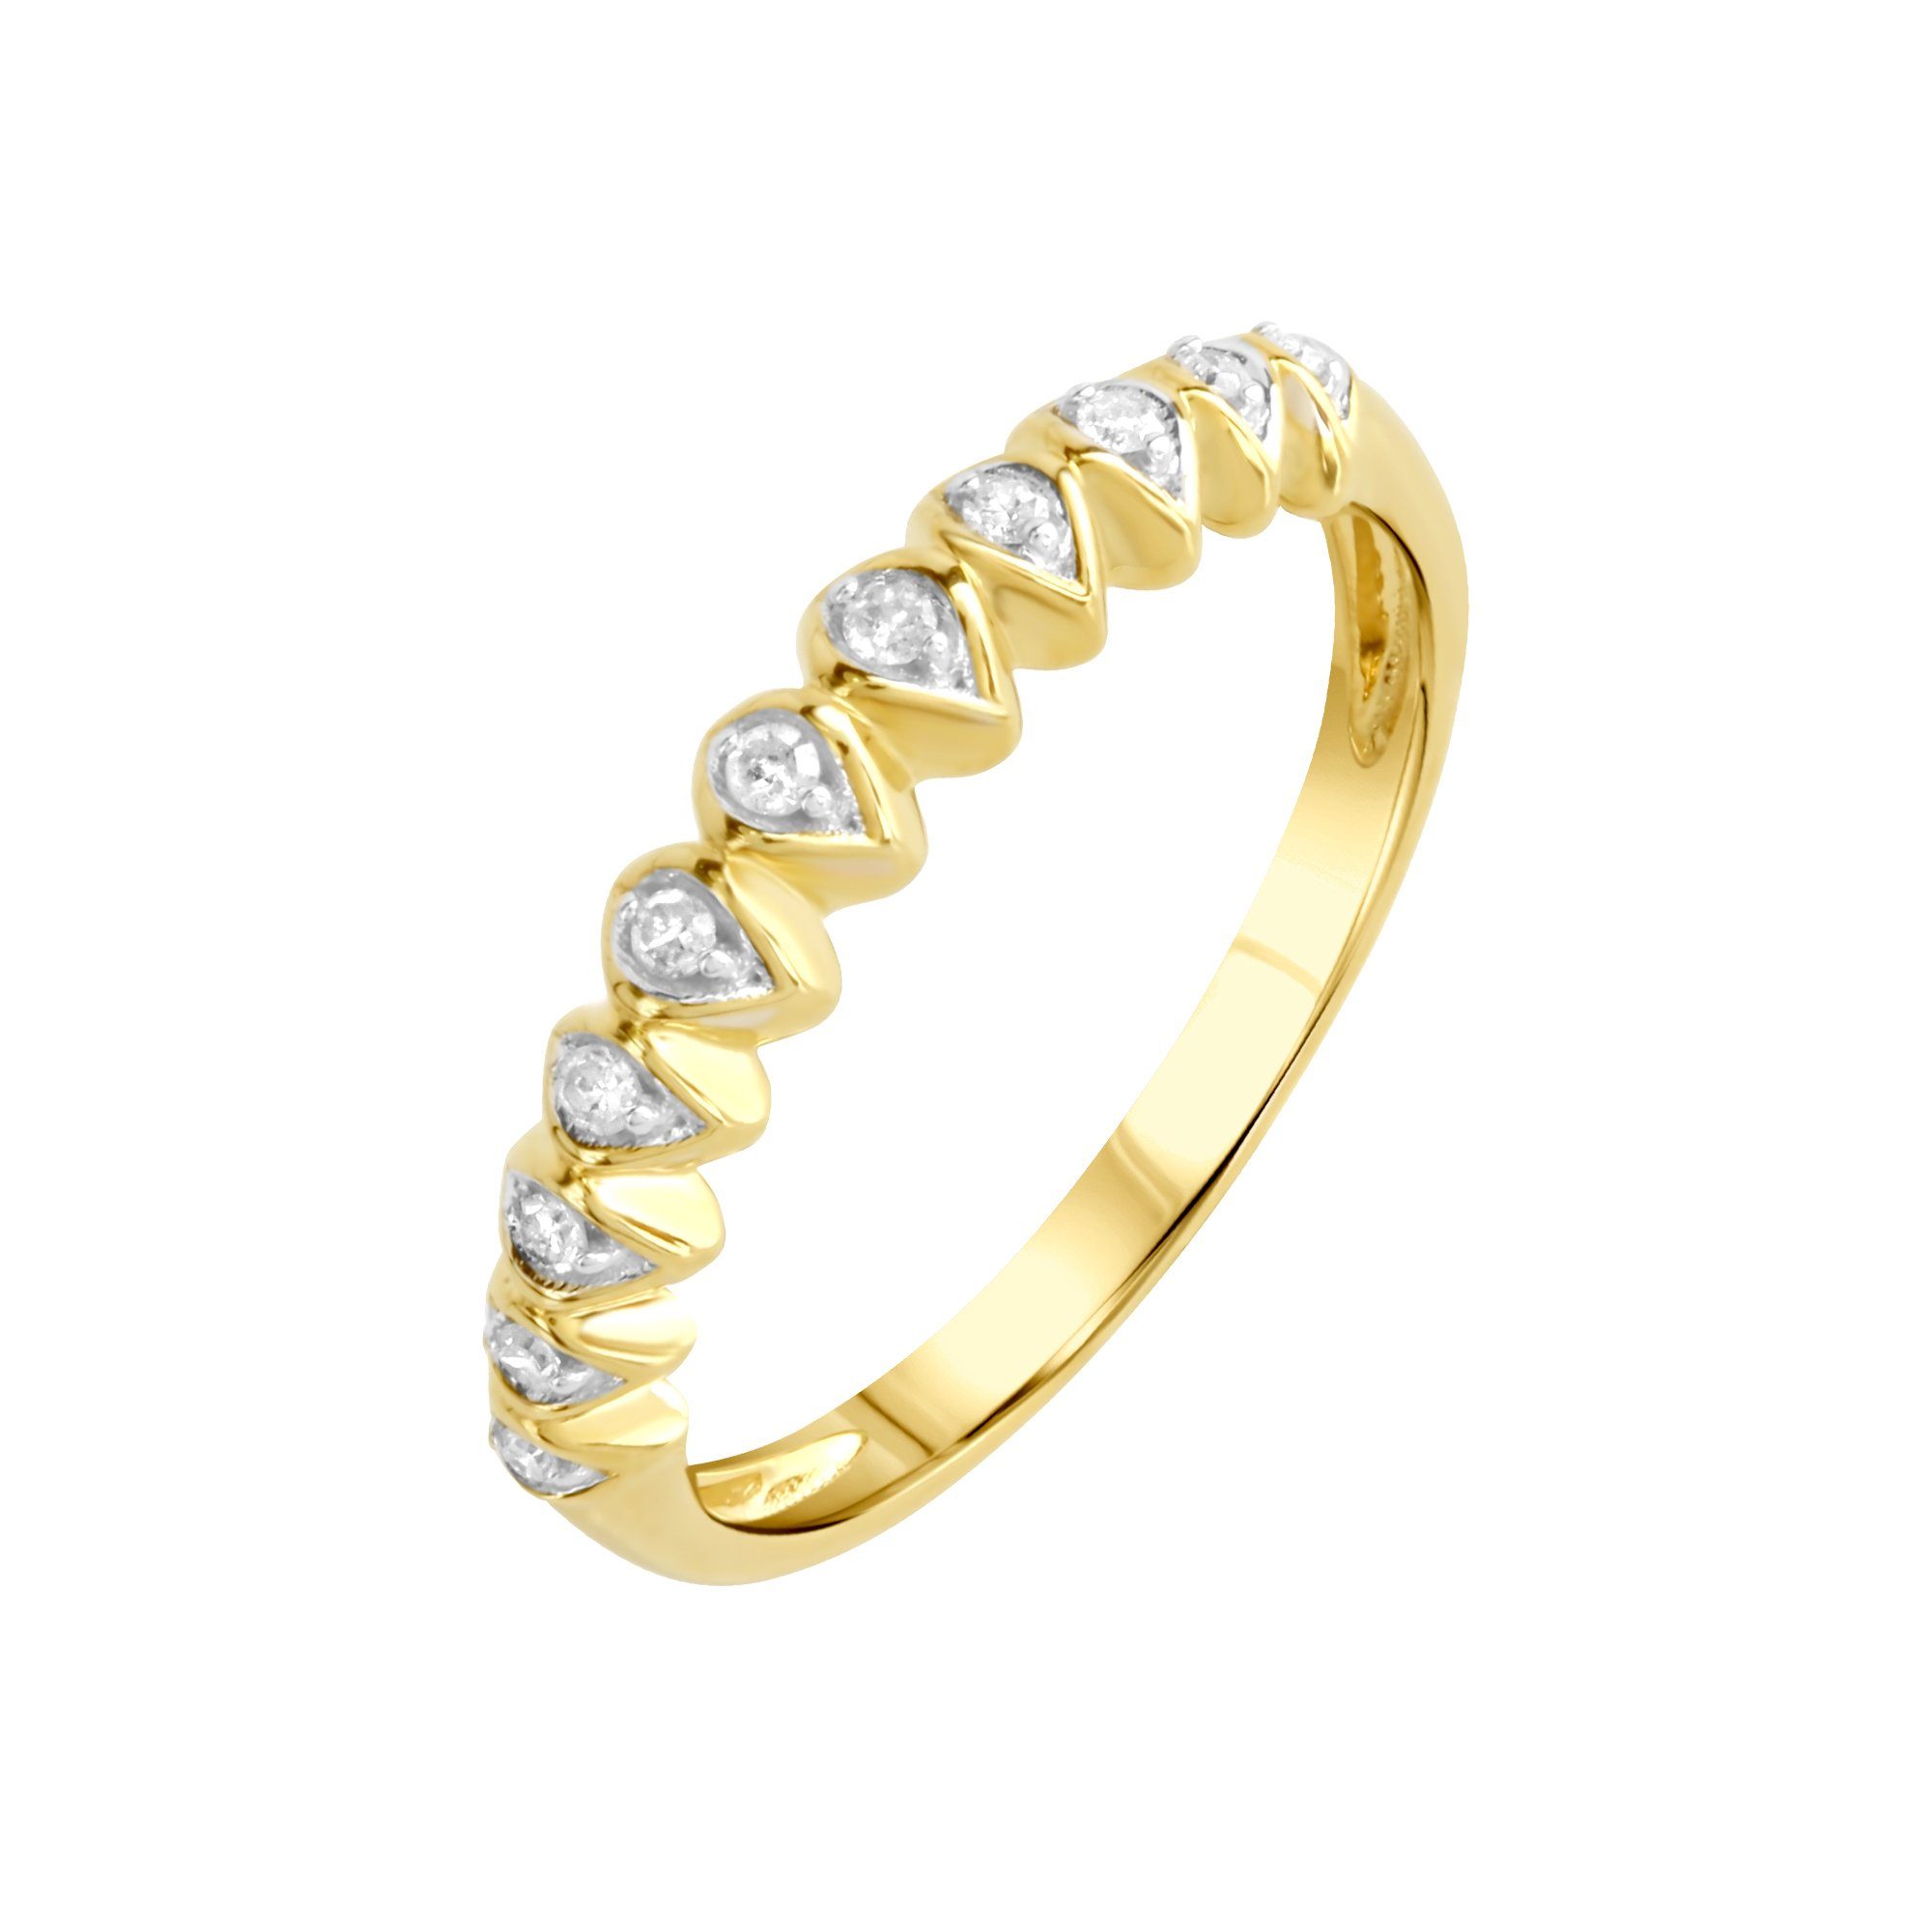 by Gold K. gelb Diamonds Ellen Diamant 375 zweifarbig 0,1ct. Fingerring